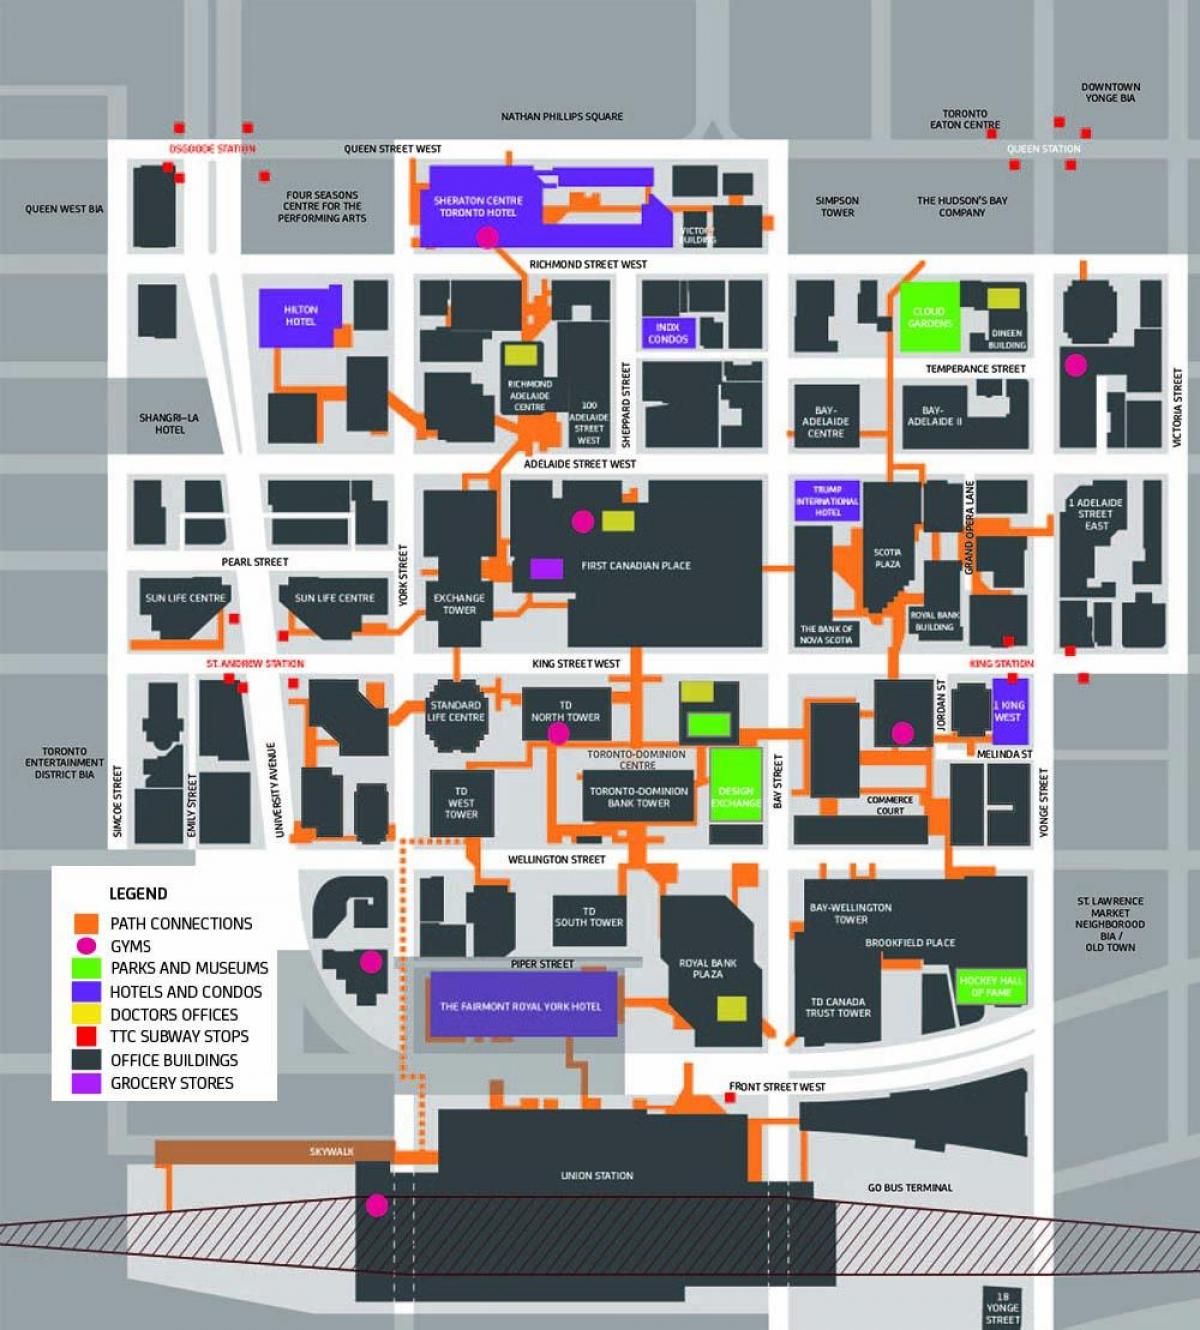 نقشے کی راہ ٹورنٹو کے شہر کے مرکز میں پیدل چلنے والے راستہ